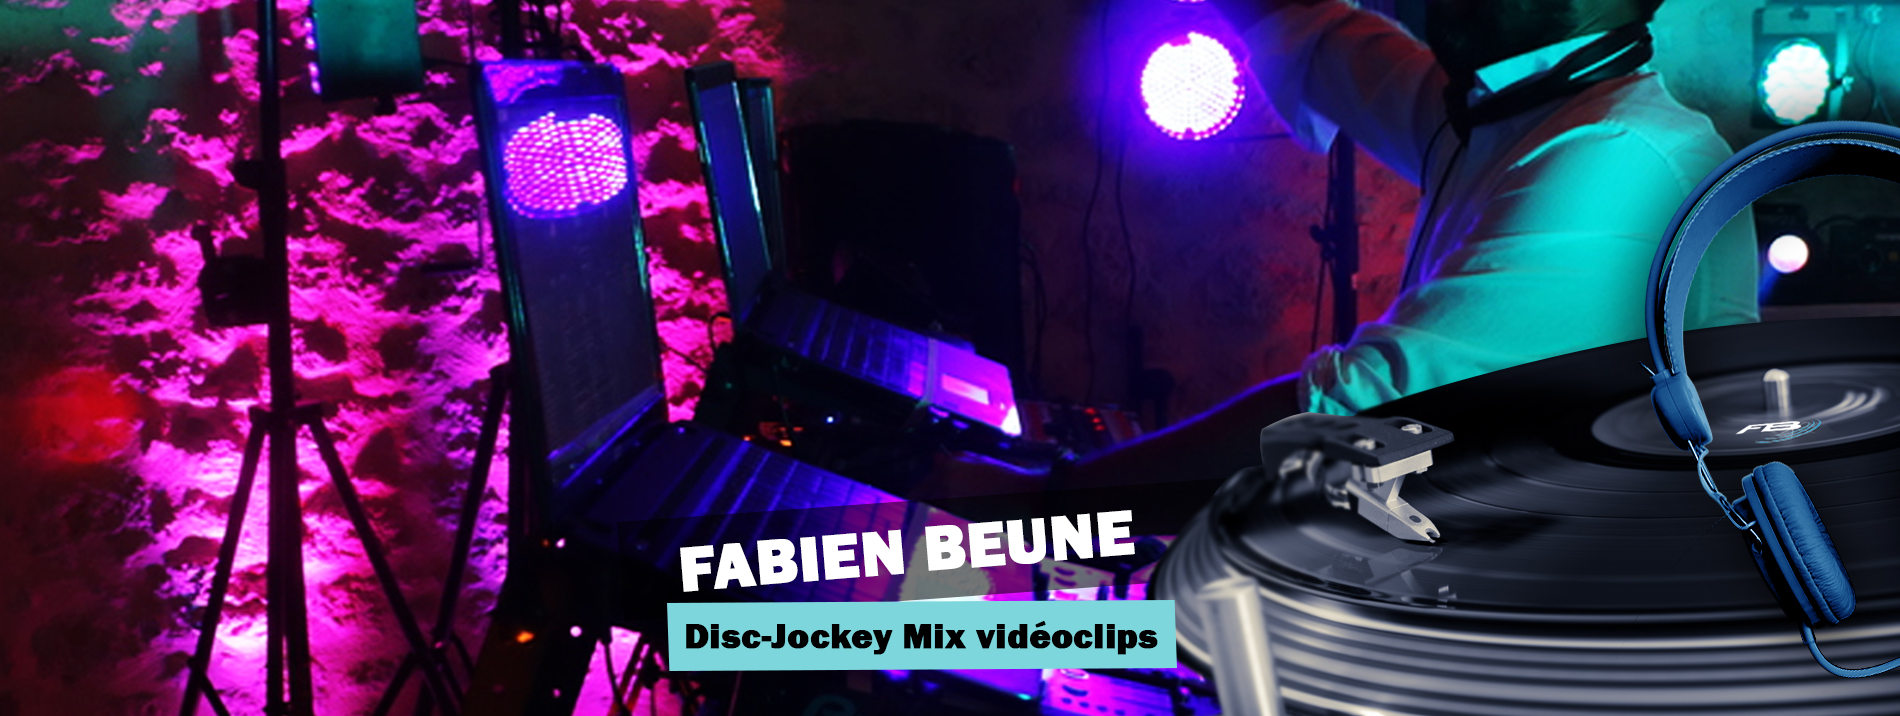 FABIEN BEUNE DJ EVENTS